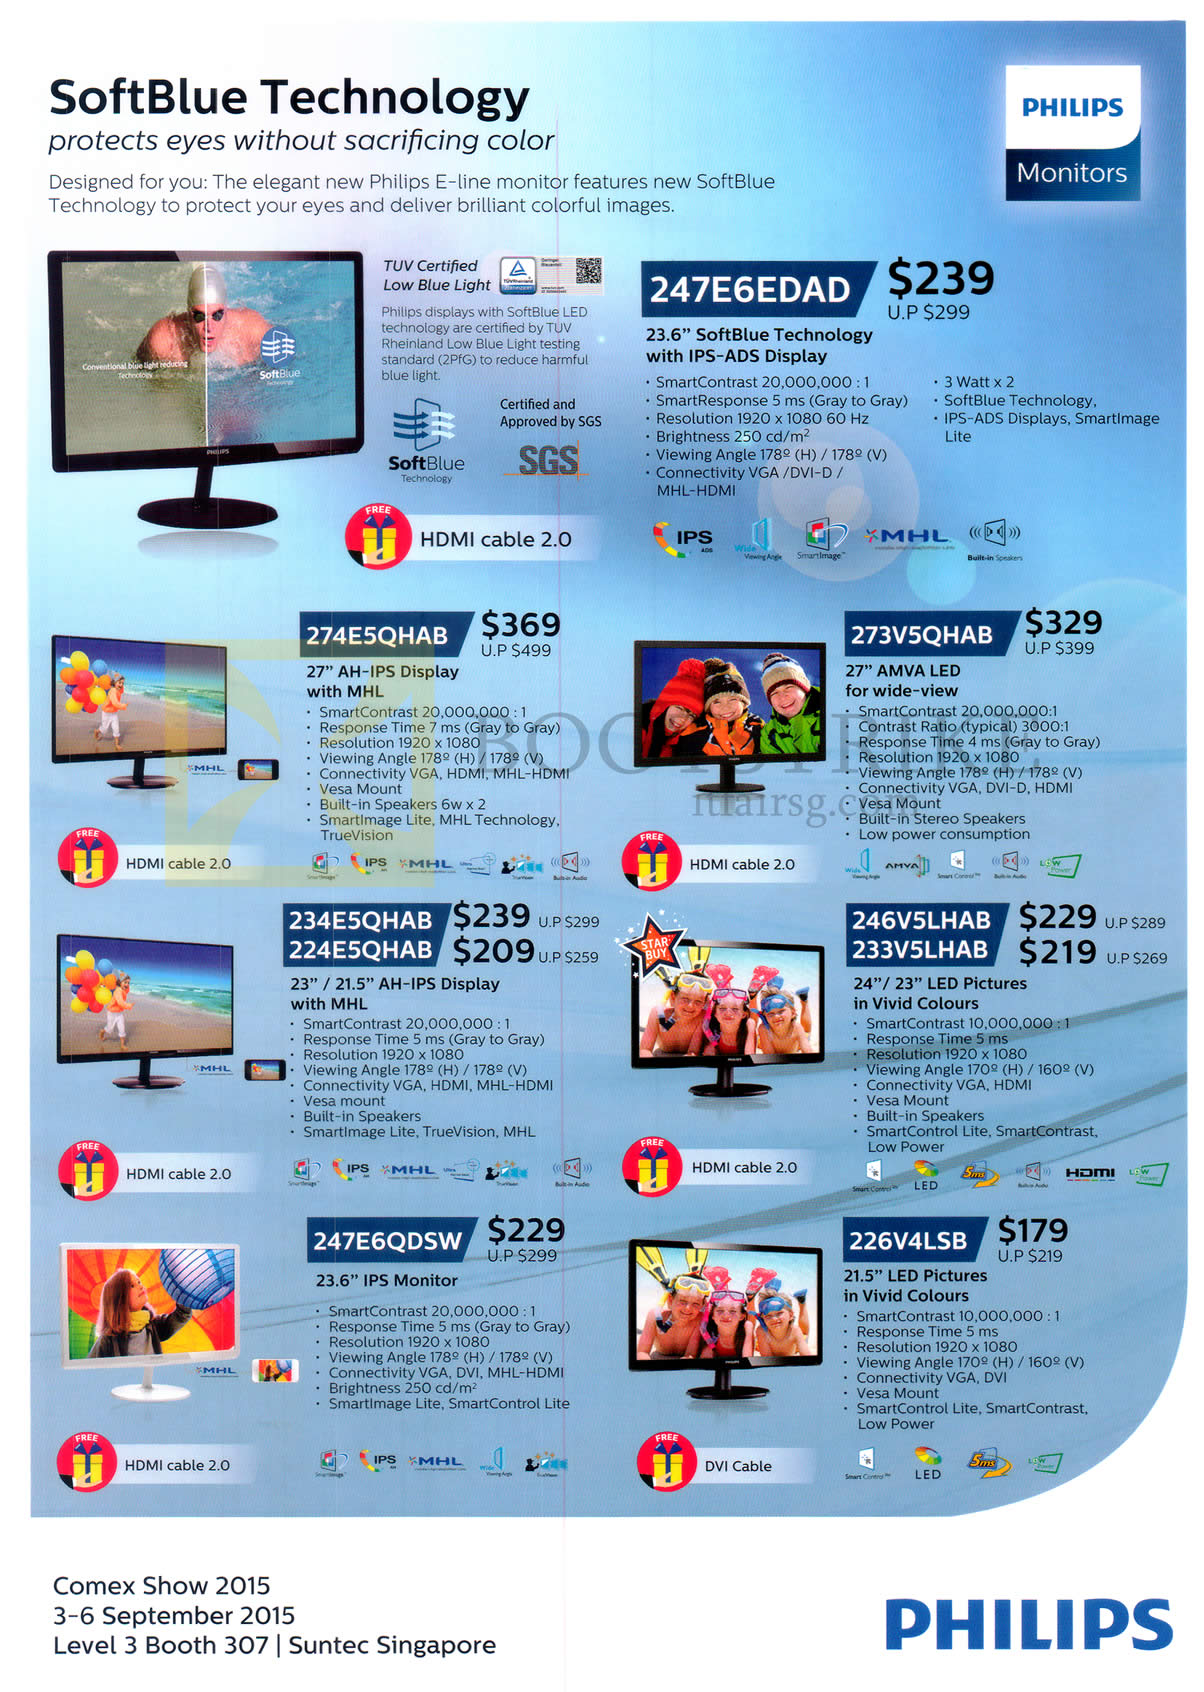 COMEX 2015 price list image brochure of Philips Monitors LED IPS 247E6EDAD, 274E5QHAB, 273V5QHAB, 234E5QHAB, 224E5QHAB, 246V5LHAB, 233V5LHAB, 247E6QDSW, 226V4LSB